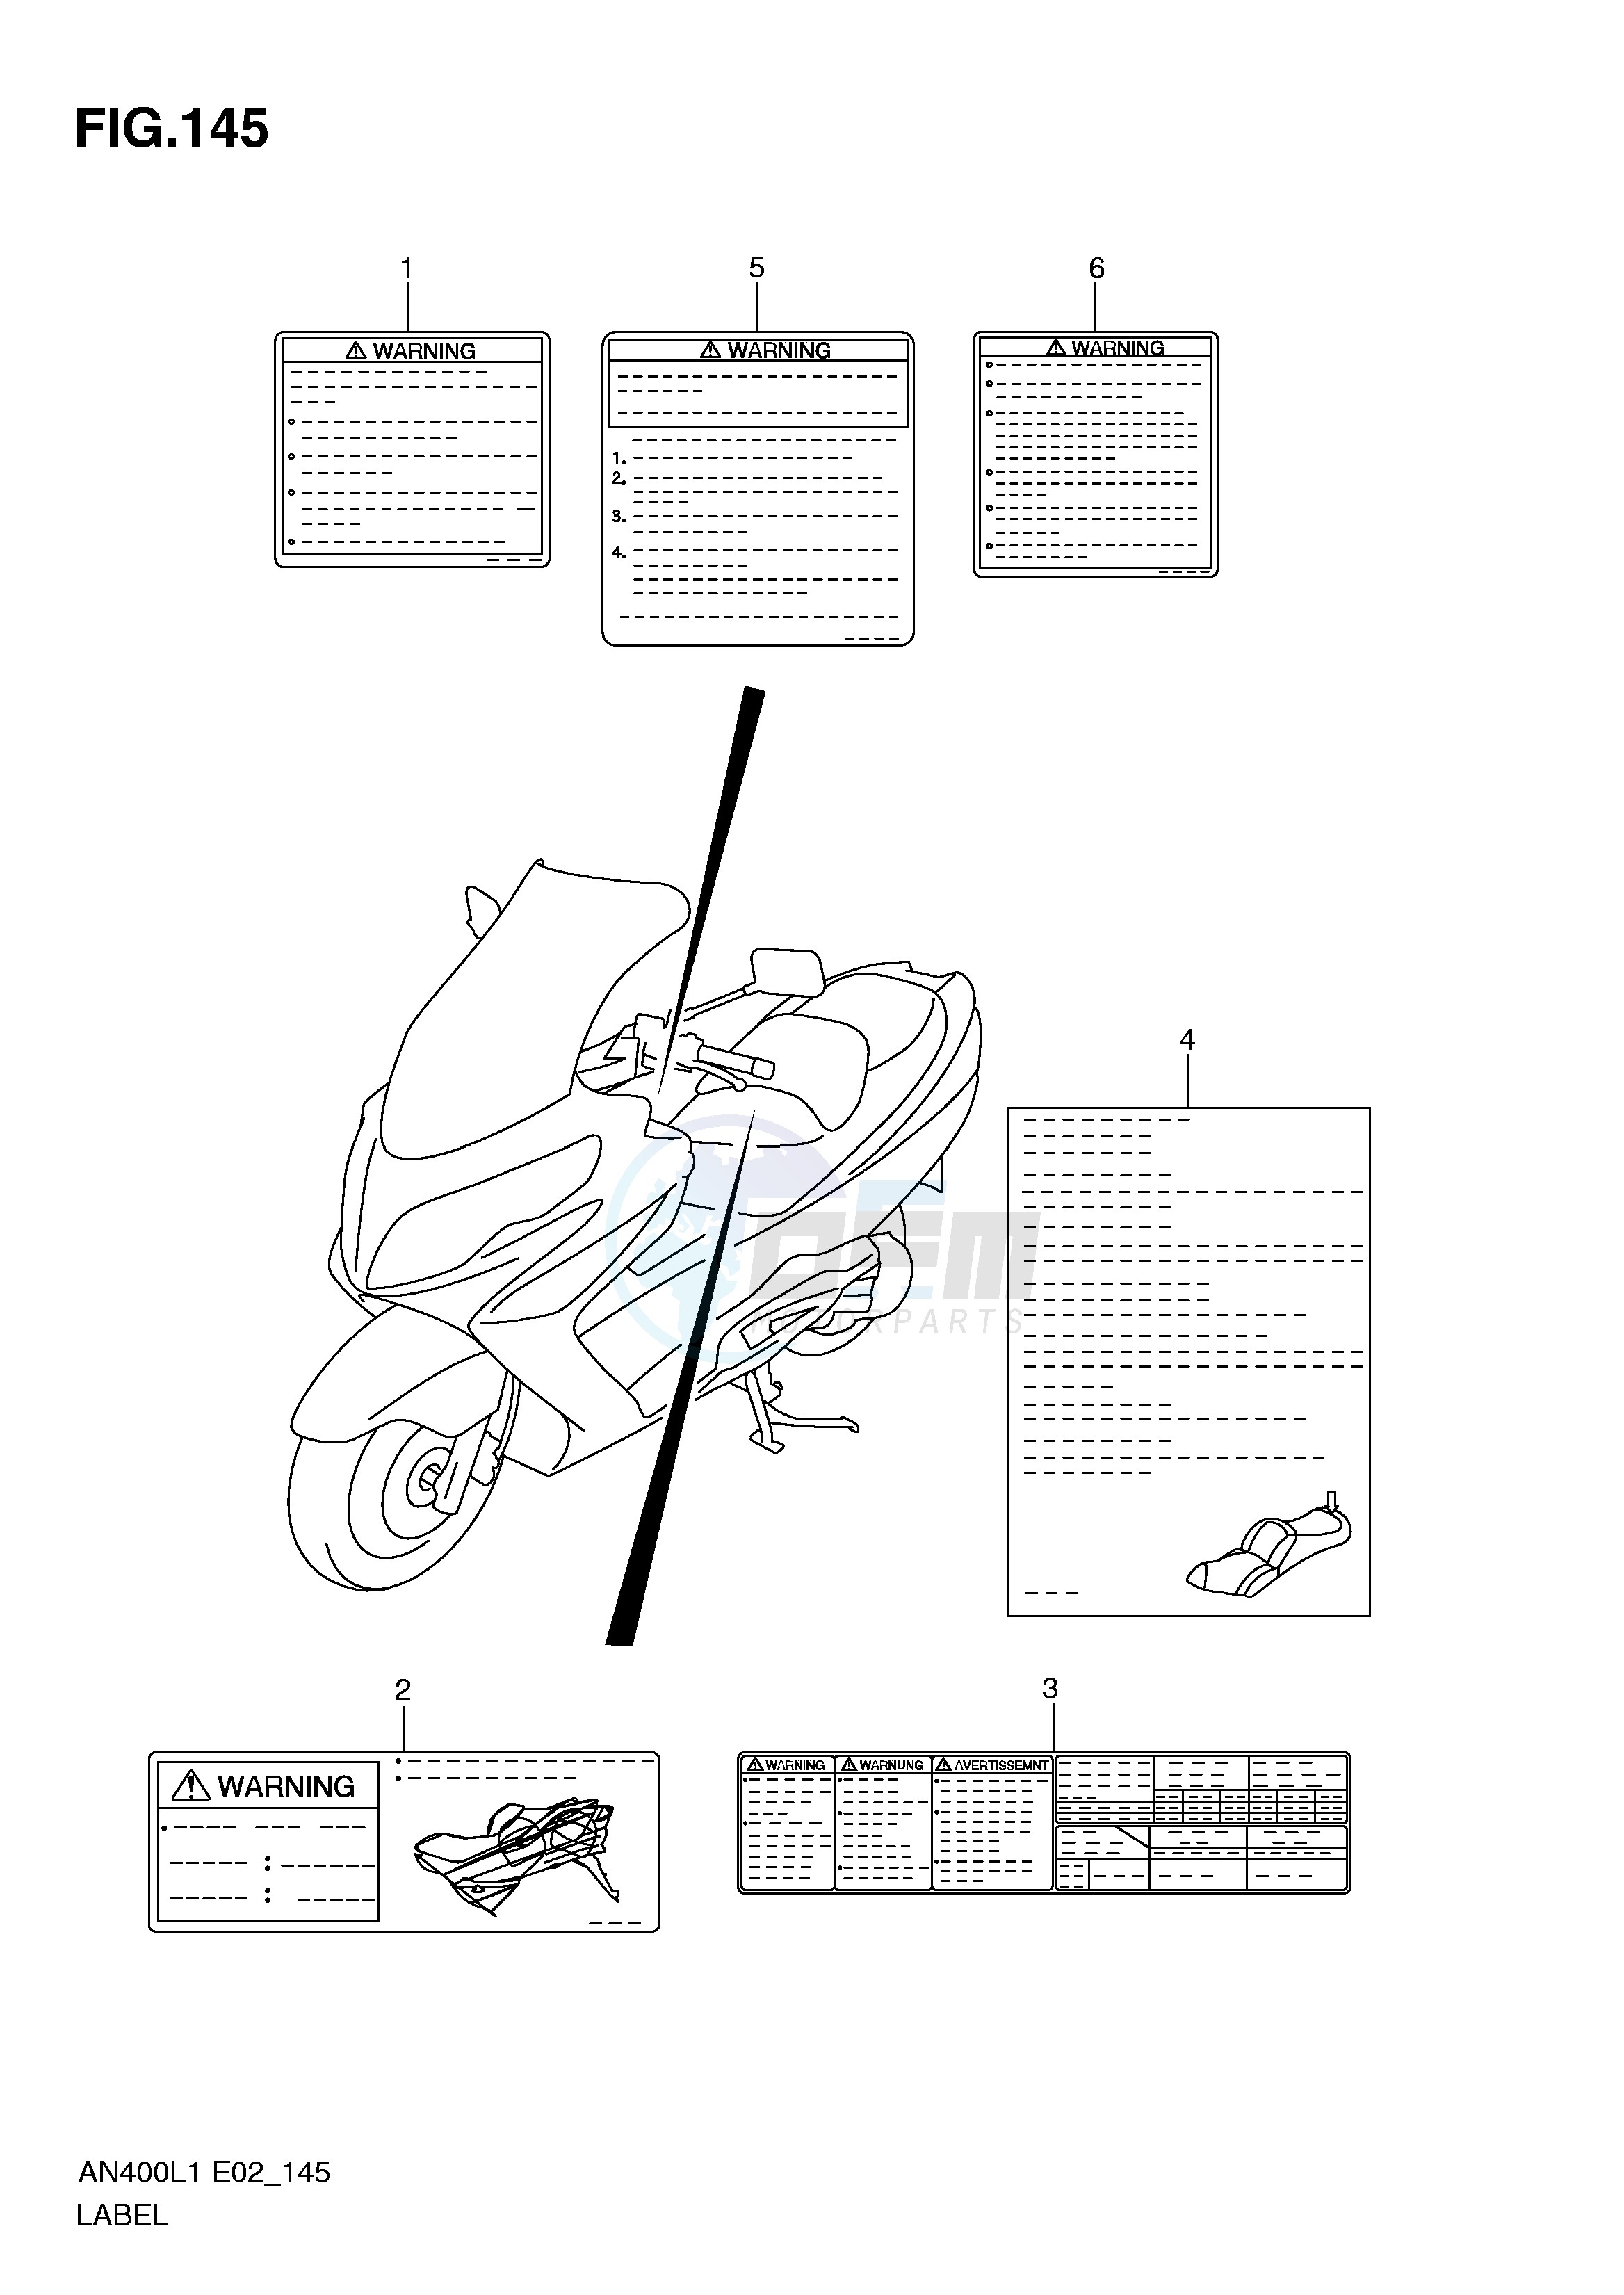 LABEL (AN400AL1 E24) blueprint